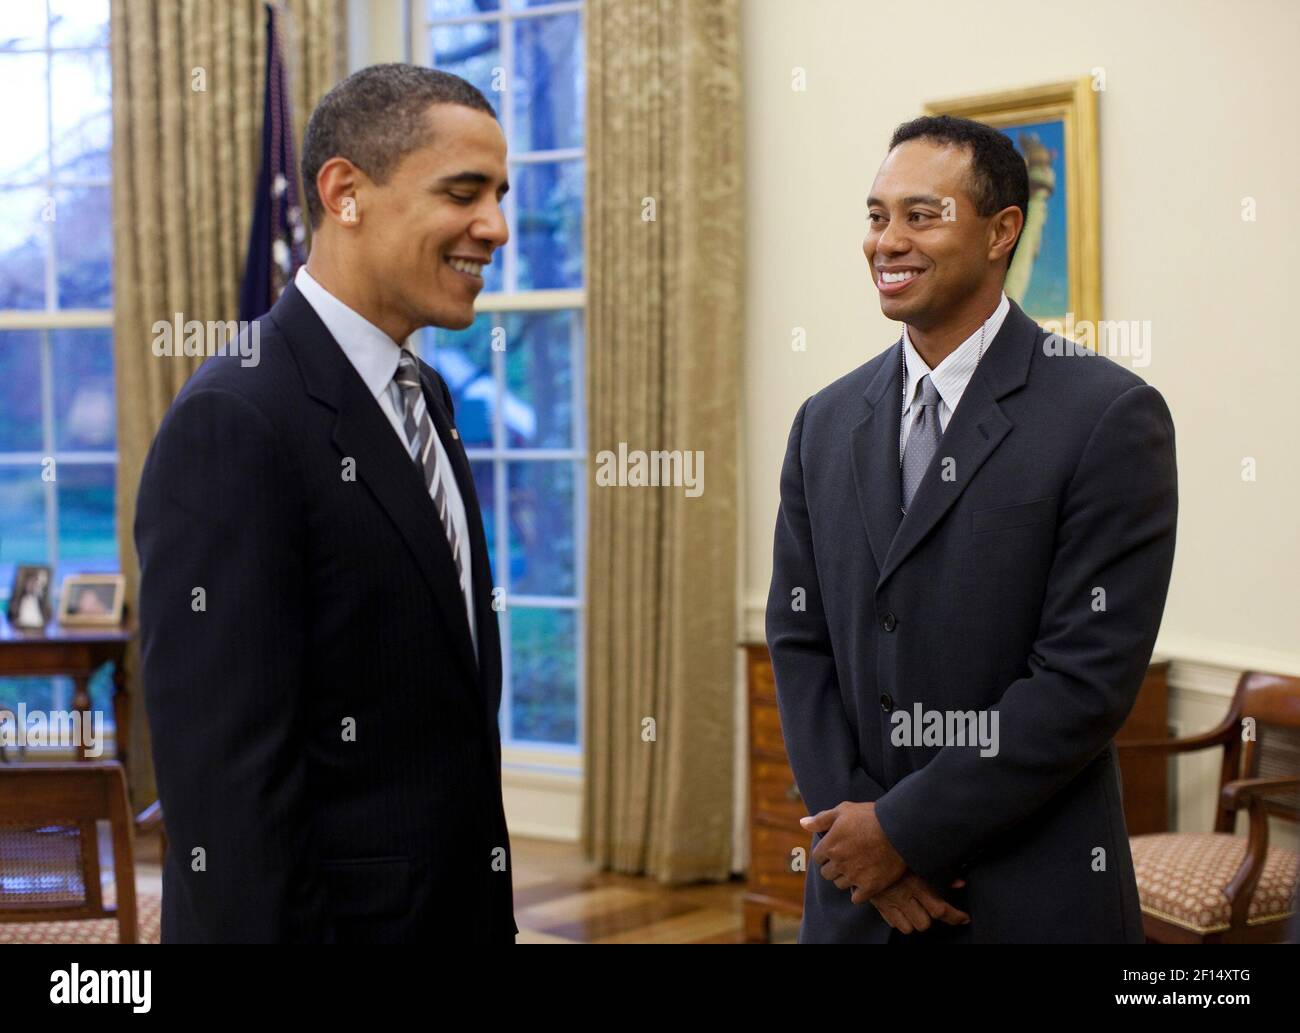 Präsident Barack Obama begrüßt professionellen Golfer Tiger Woods im Oval Office Montag, 20. April 2009. Der 14-fache Hauptgewinner besuchte das Weiße Haus Montag nach einer Pressekonferenz für die AT&T National, die PGA Tour Veranstaltung Woods Gastgeber im Congressional Country Club 29. Juni-Juli 5. Offizielles weißes Haus Foto von Pete Souza Stockfoto